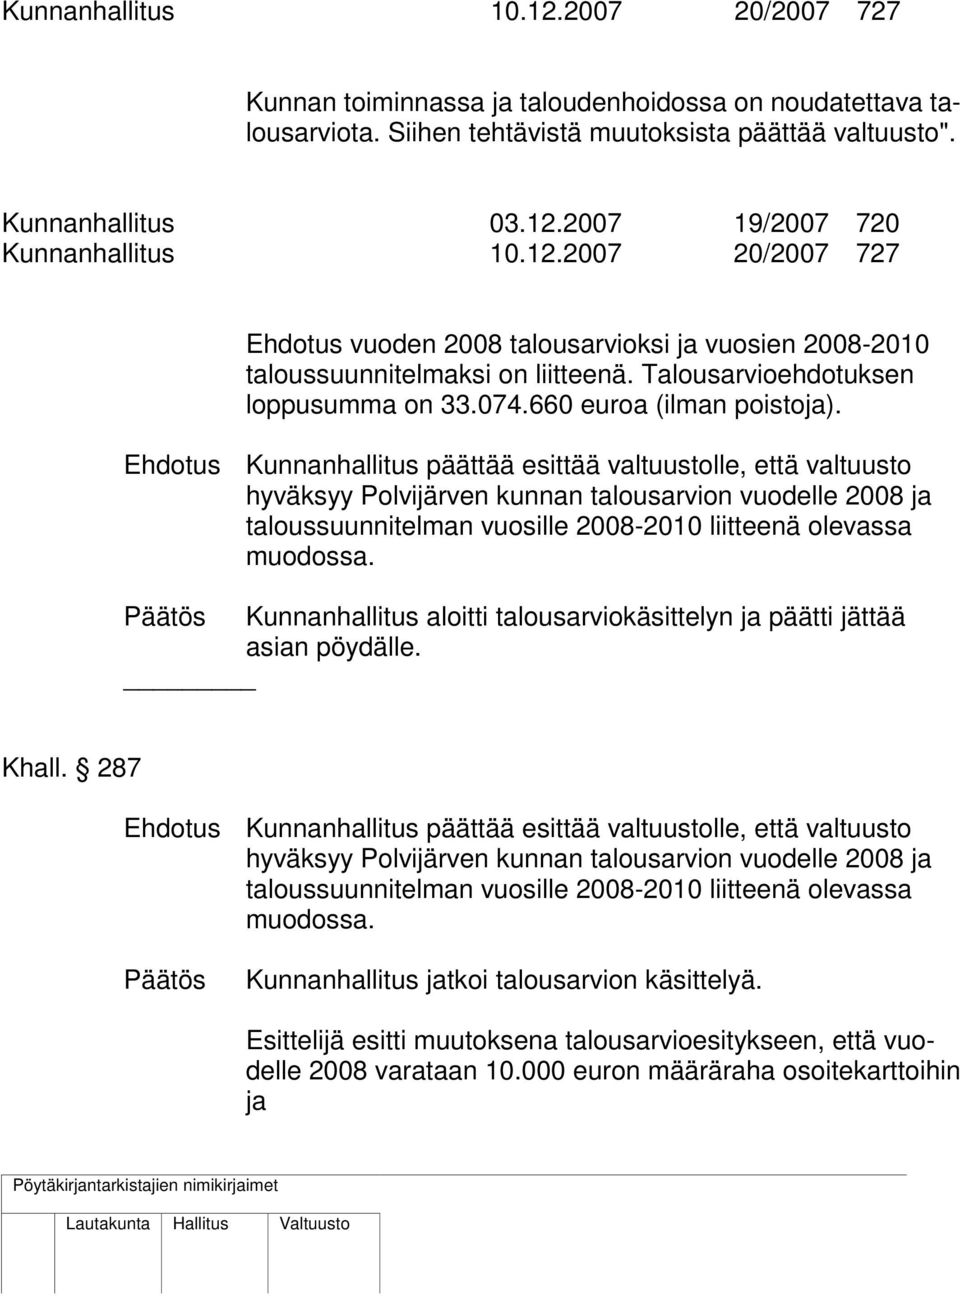 Ehdotus Kunnanhallitus päättää esittää valtuustolle, että valtuusto hyväksyy Polvijärven kunnan talousarvion vuodelle 2008 ja taloussuunnitelman vuosille 2008-2010 liitteenä olevassa muodossa.